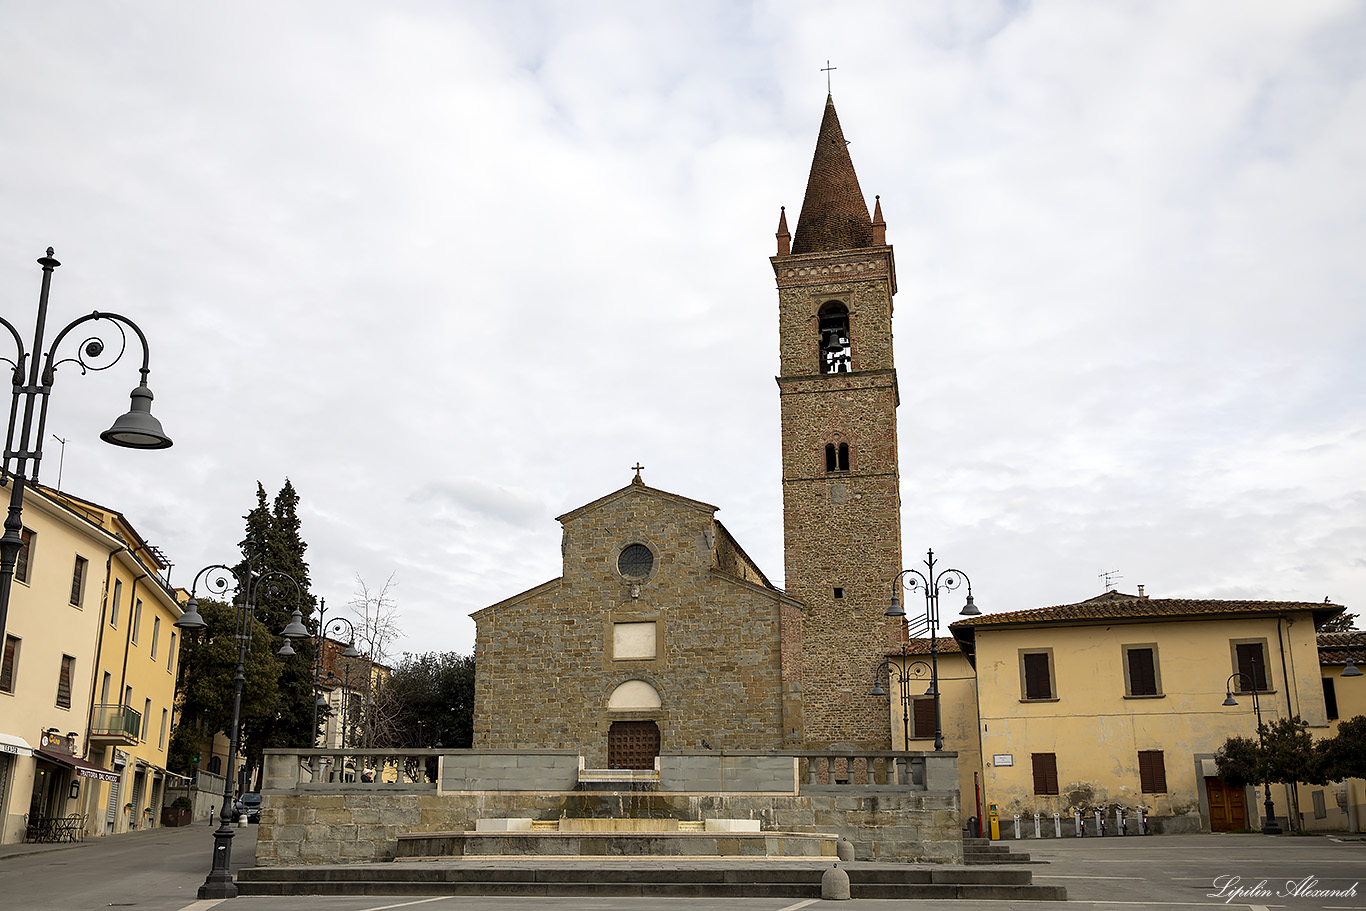 Ареццо (Arezzo) - Италия (Italy)